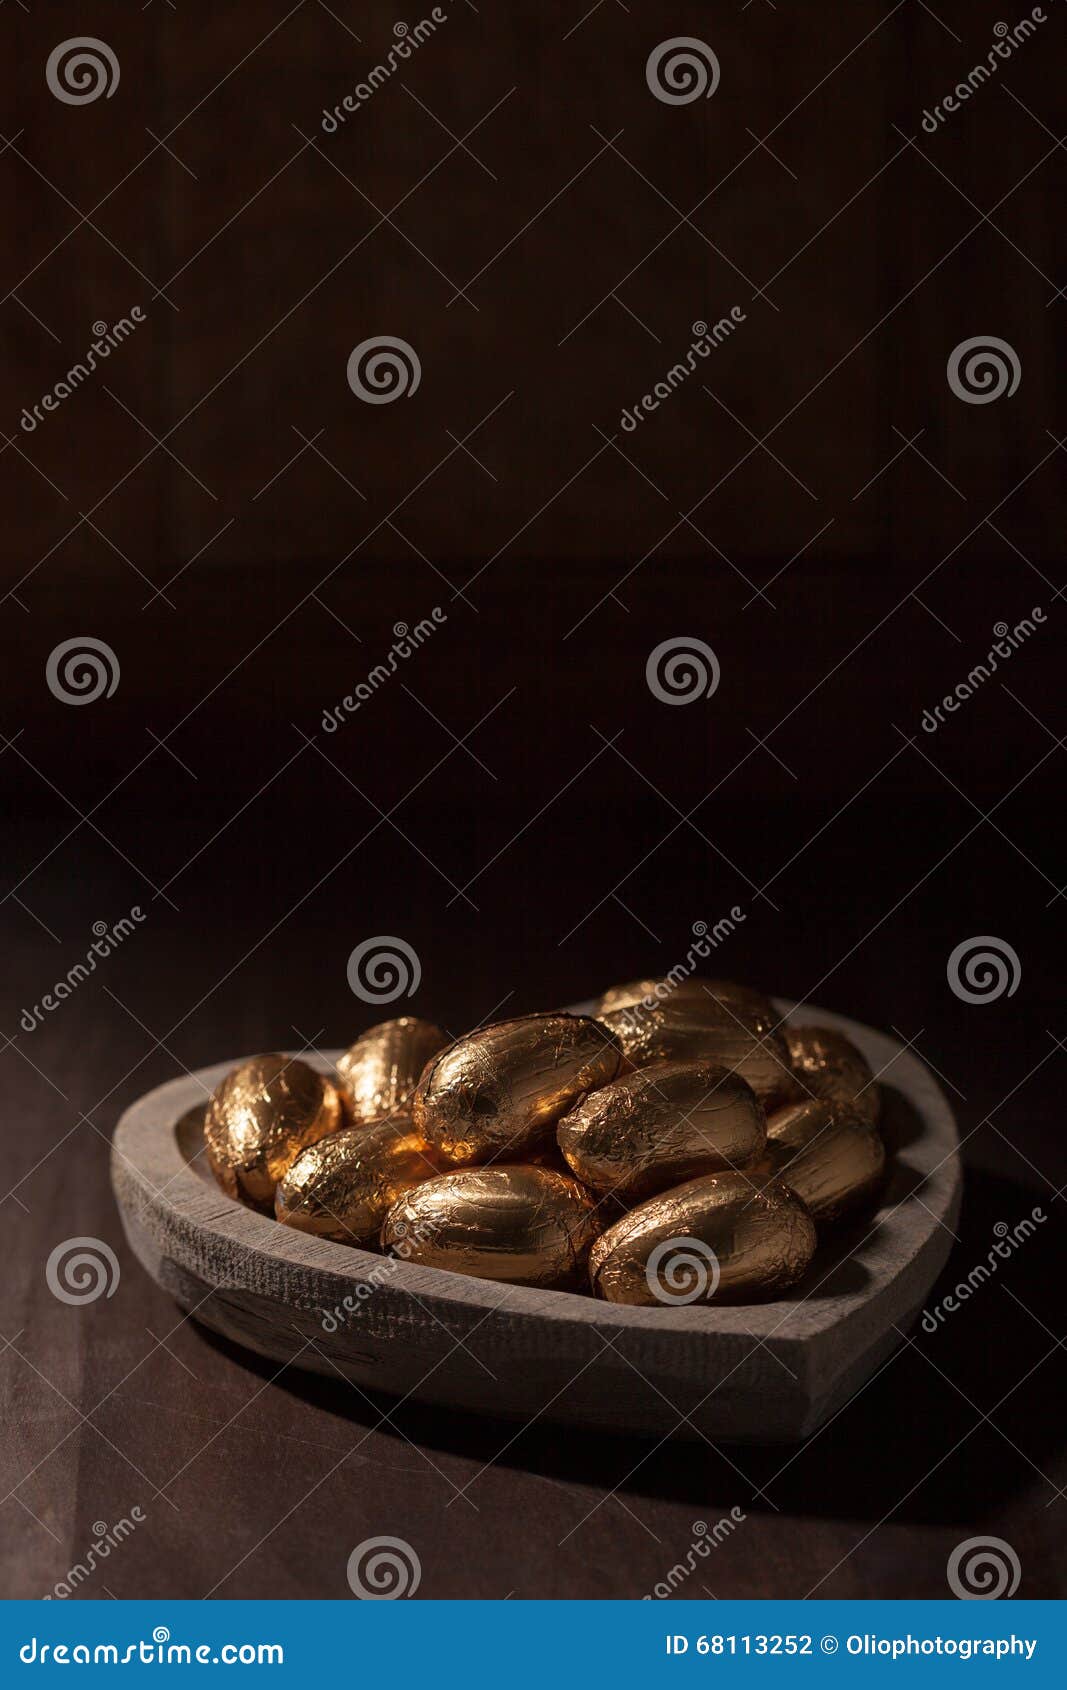 巧克力微型鸡蛋，包裹在金箔. 在金箔的复活节彩蛋，在一个心形的木碗，反对黑暗的背景